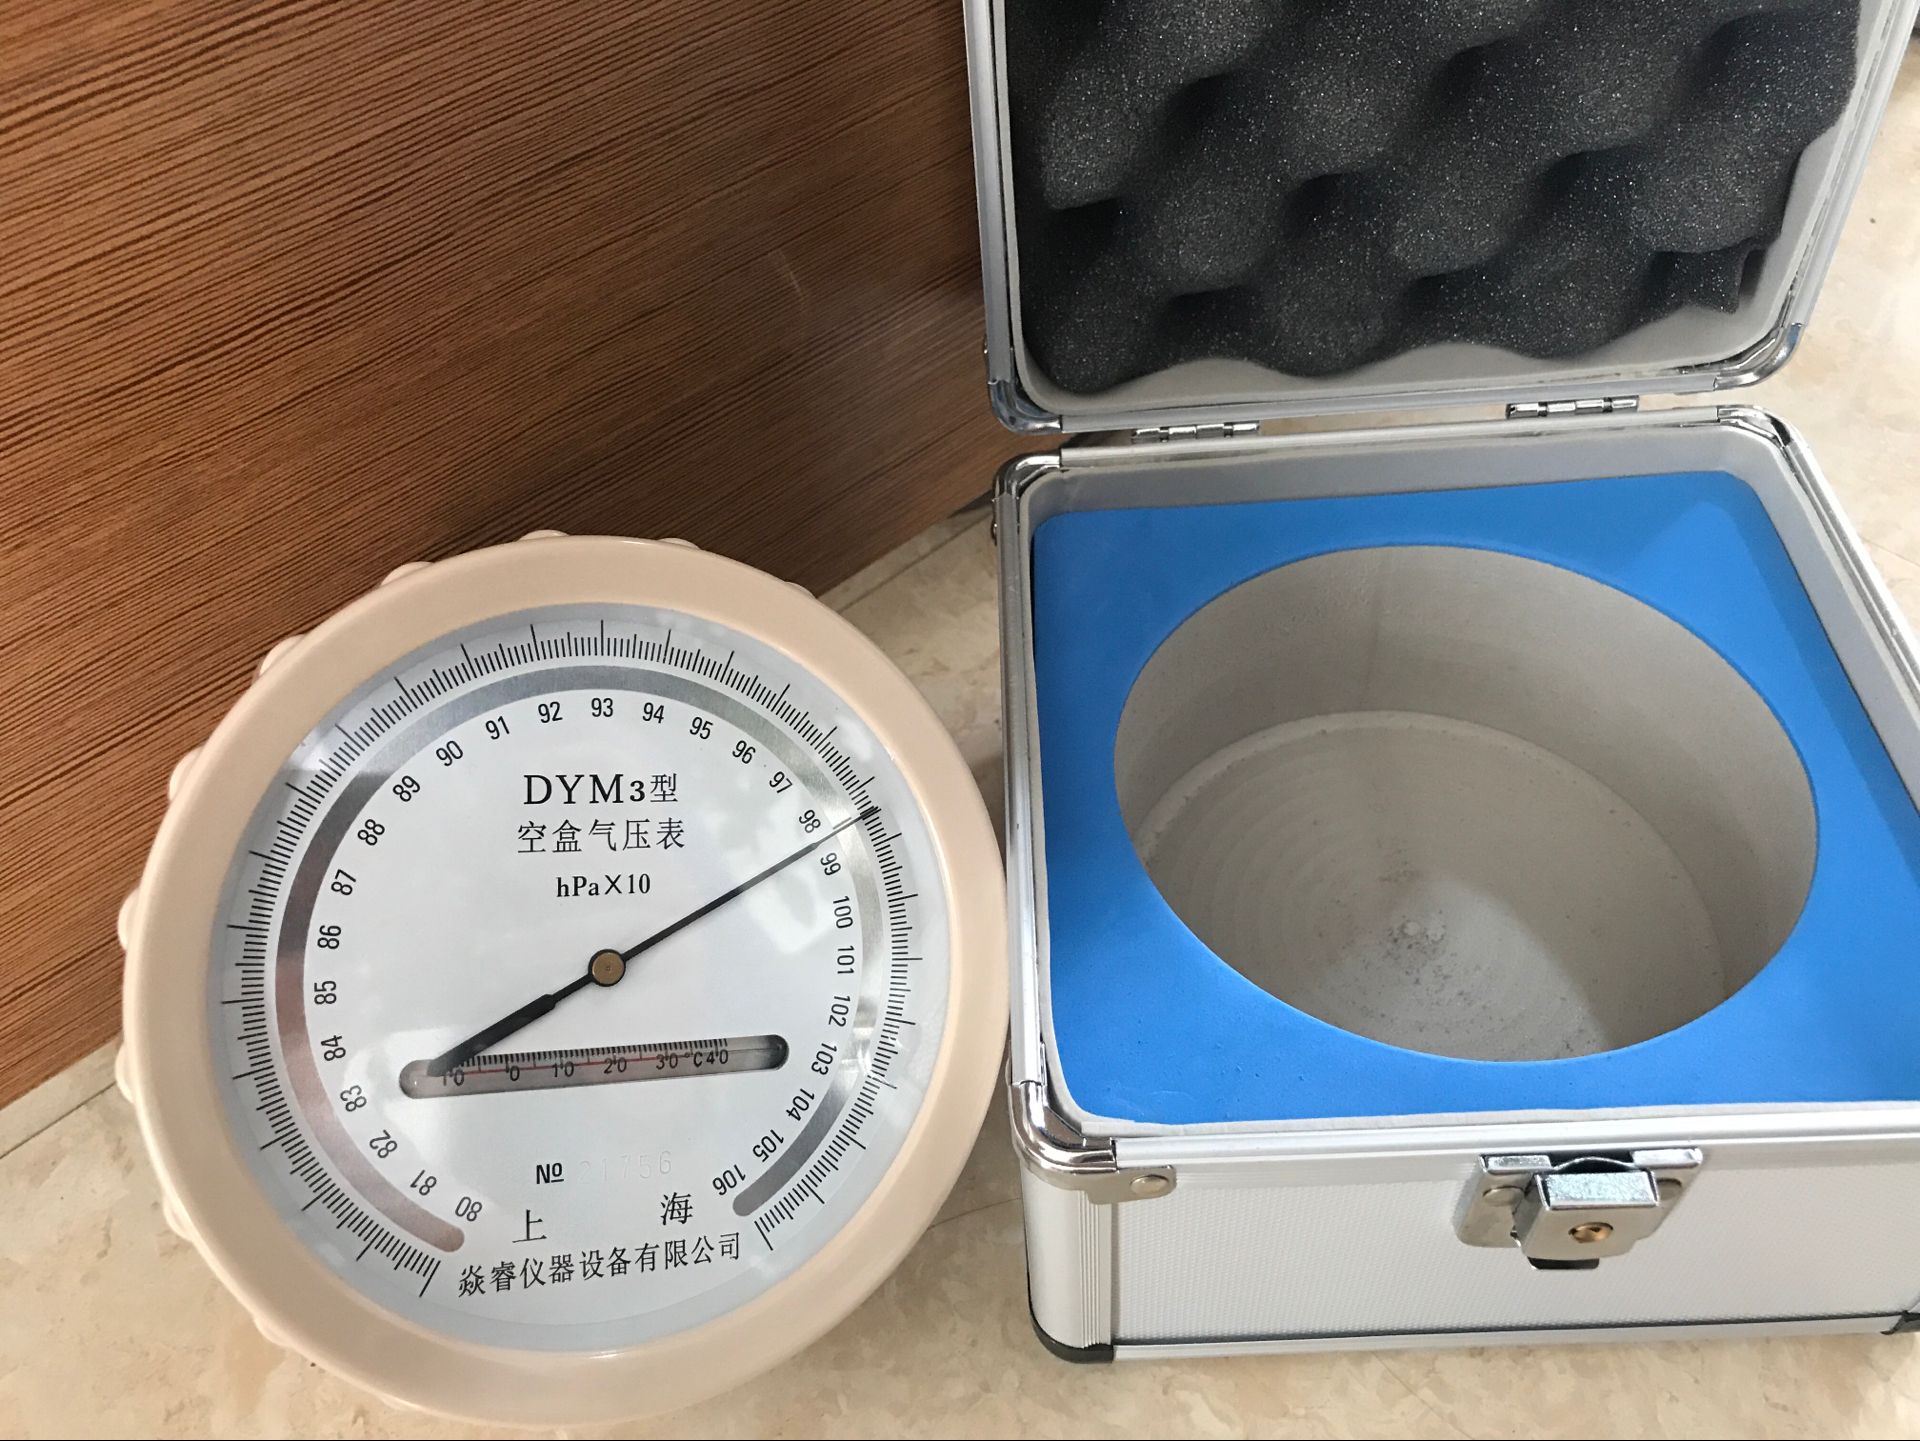 许愿单品DYM3型空盒气压表分分钟安排到位